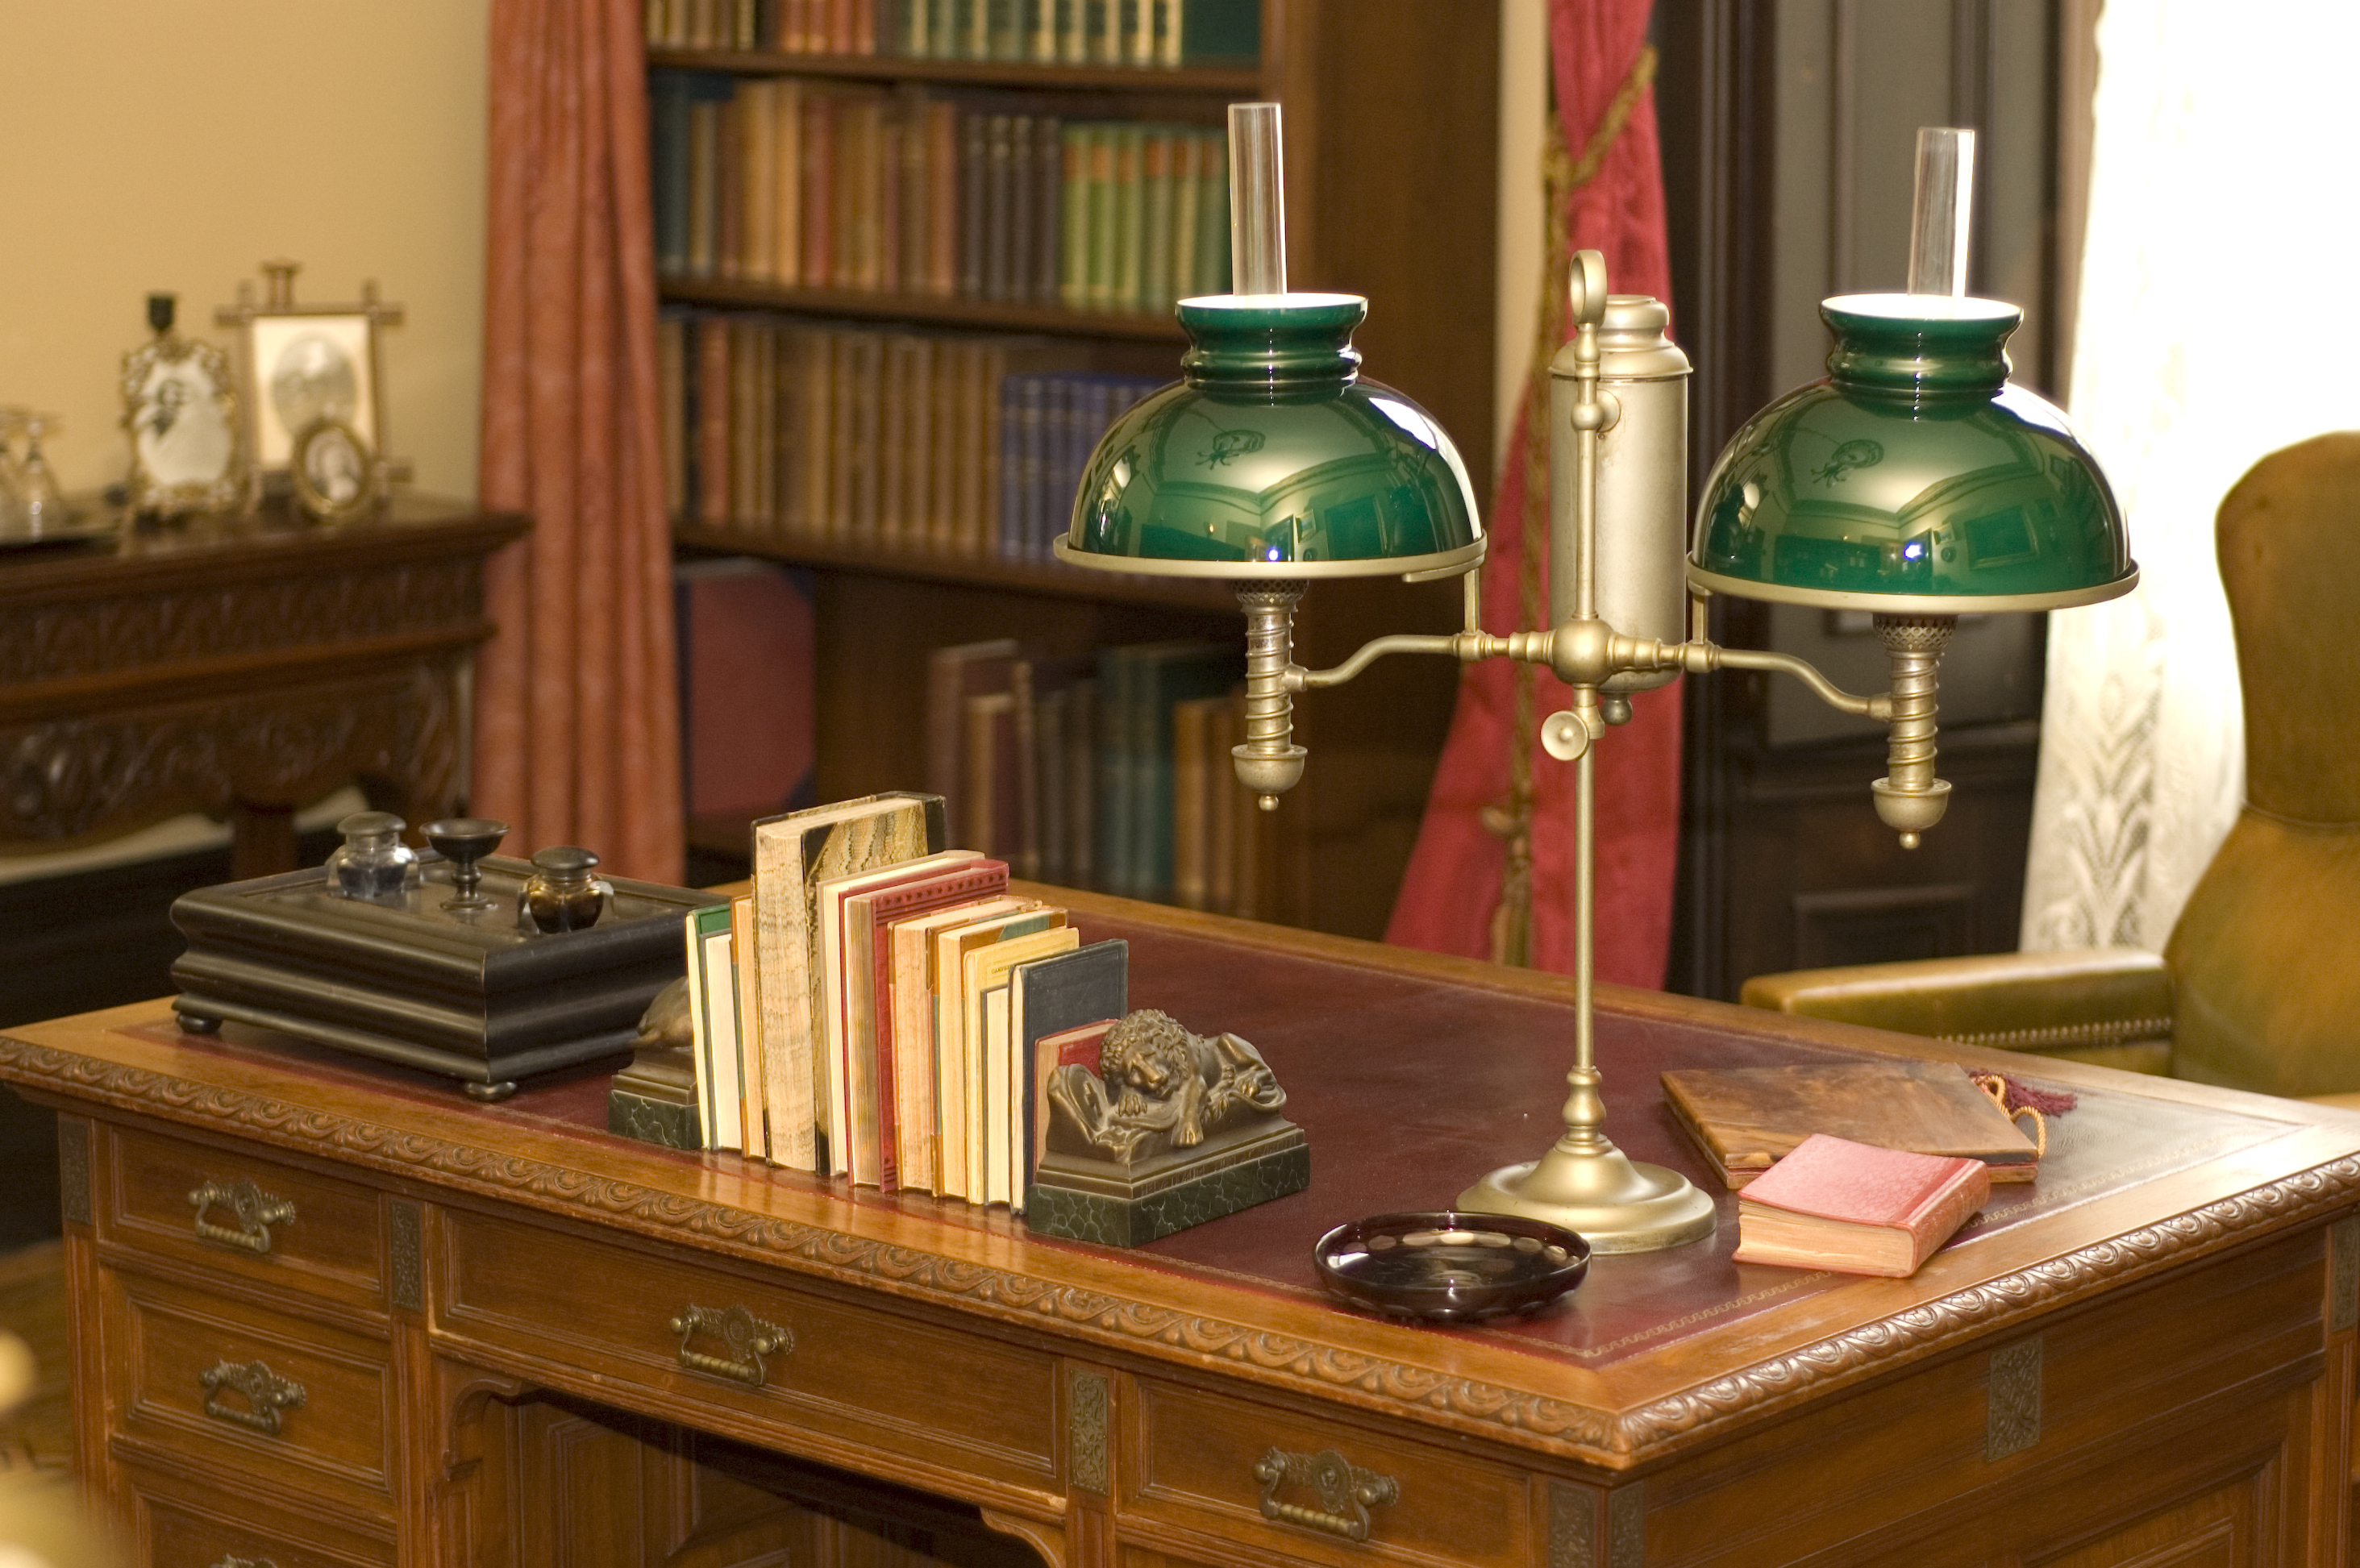 Una lámpara de aceite clásica y libros colocados sobre una antigua mesa de despacho | Fuente: Shutterstock